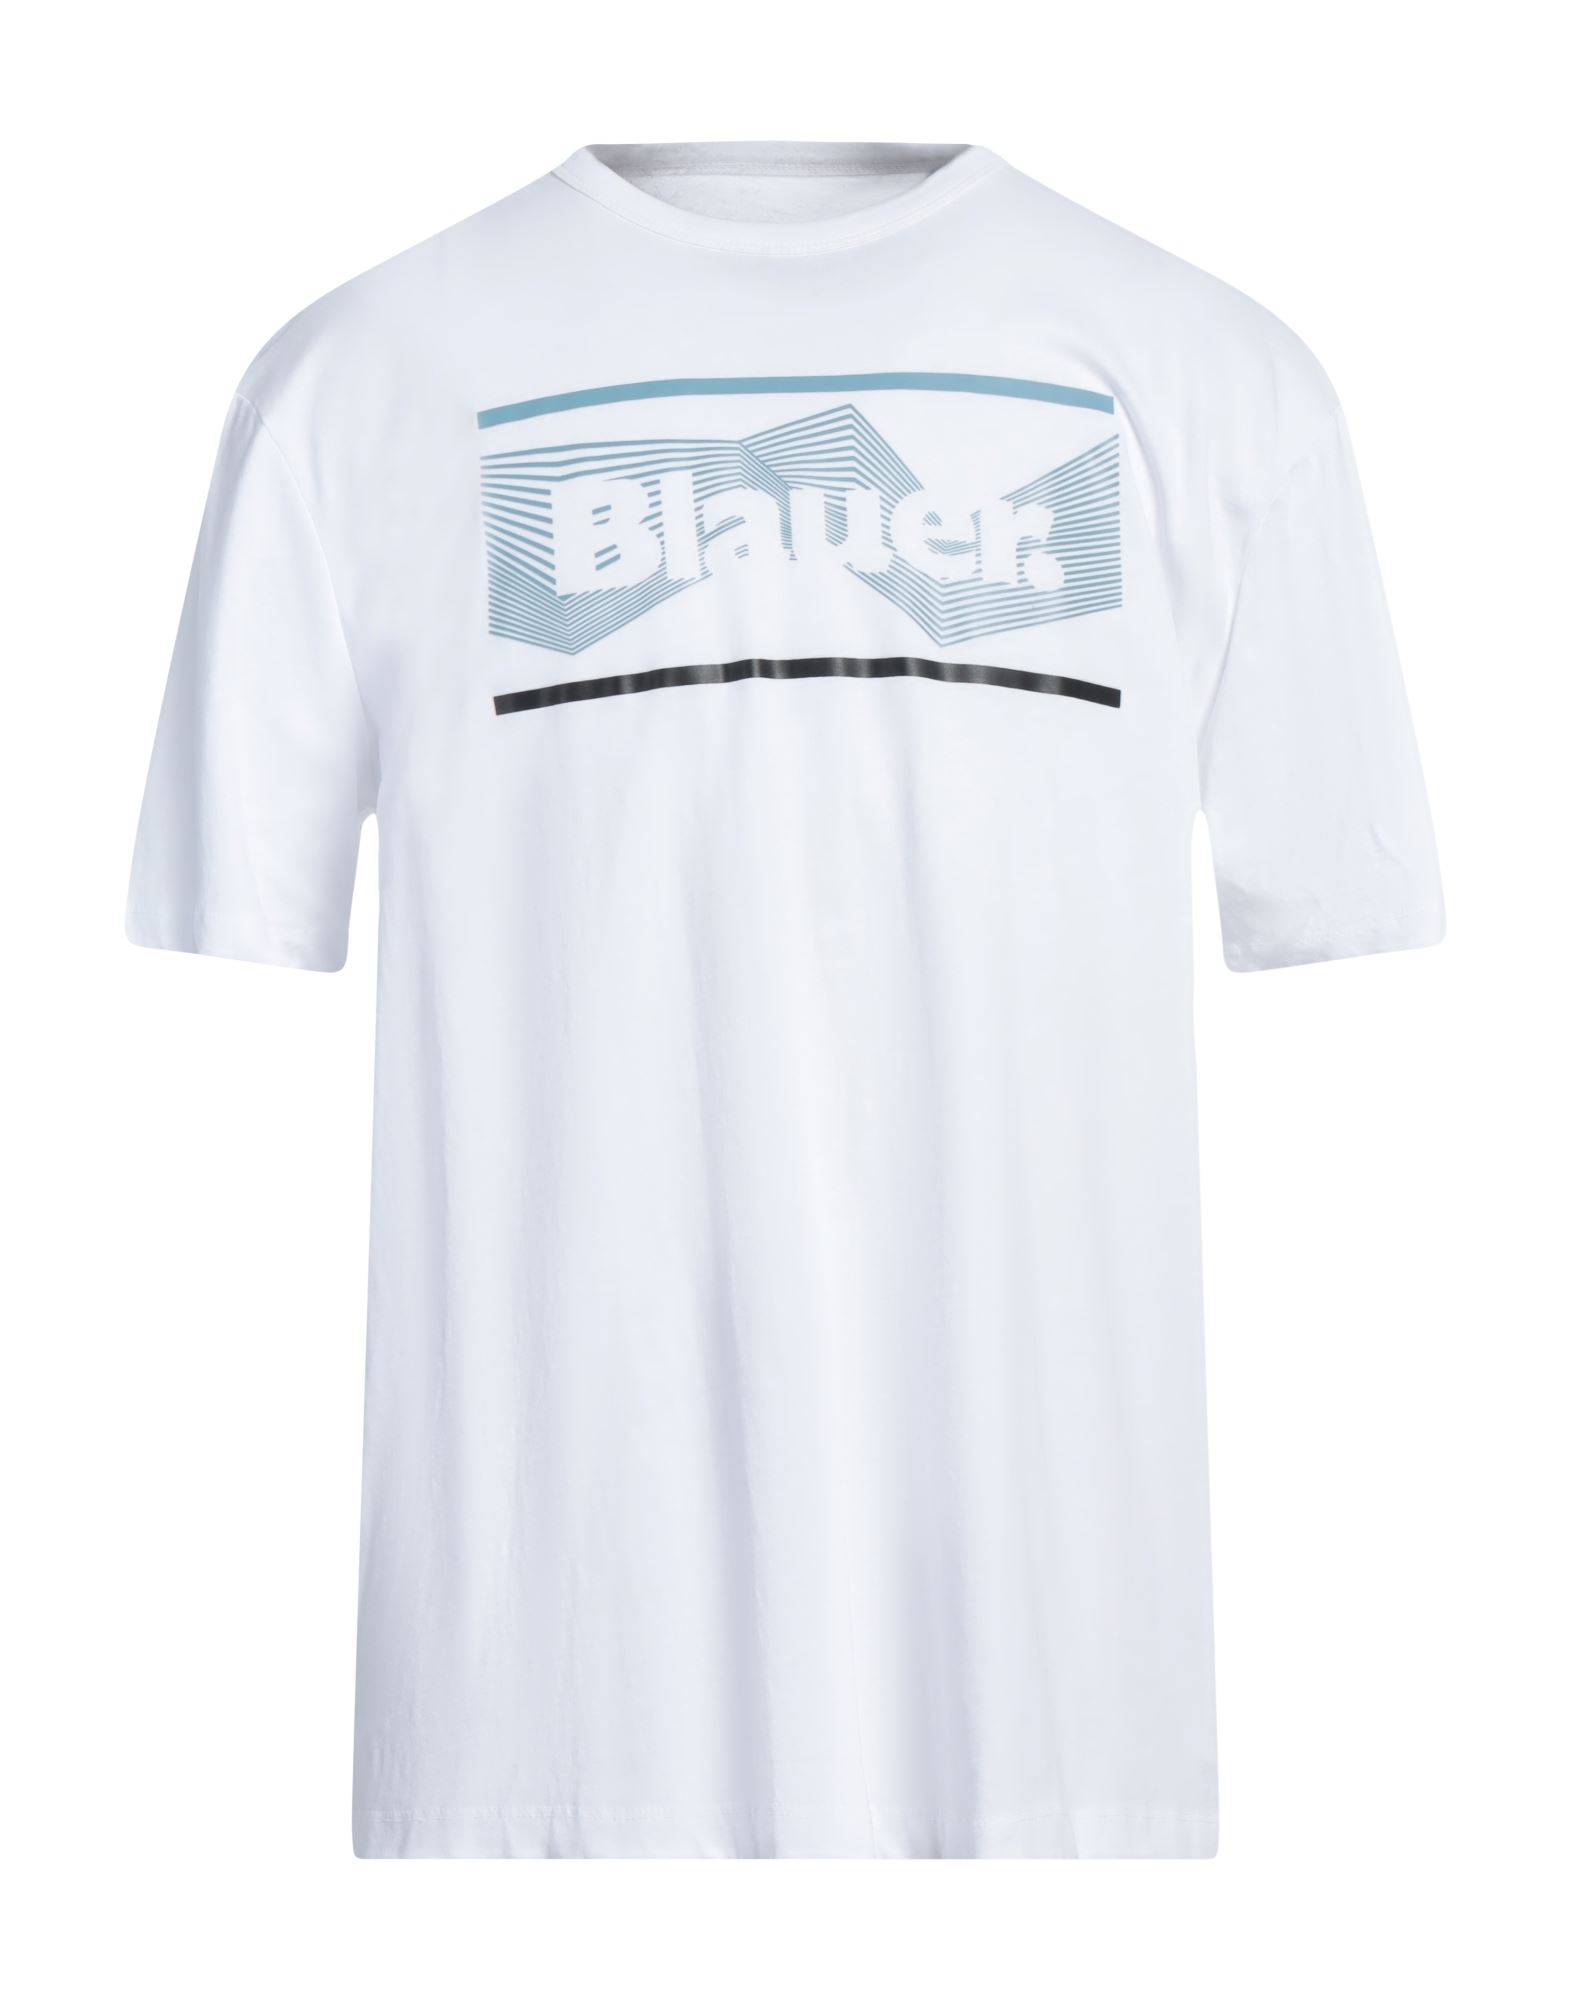 BLAUER T-shirts Herren Weiß von BLAUER